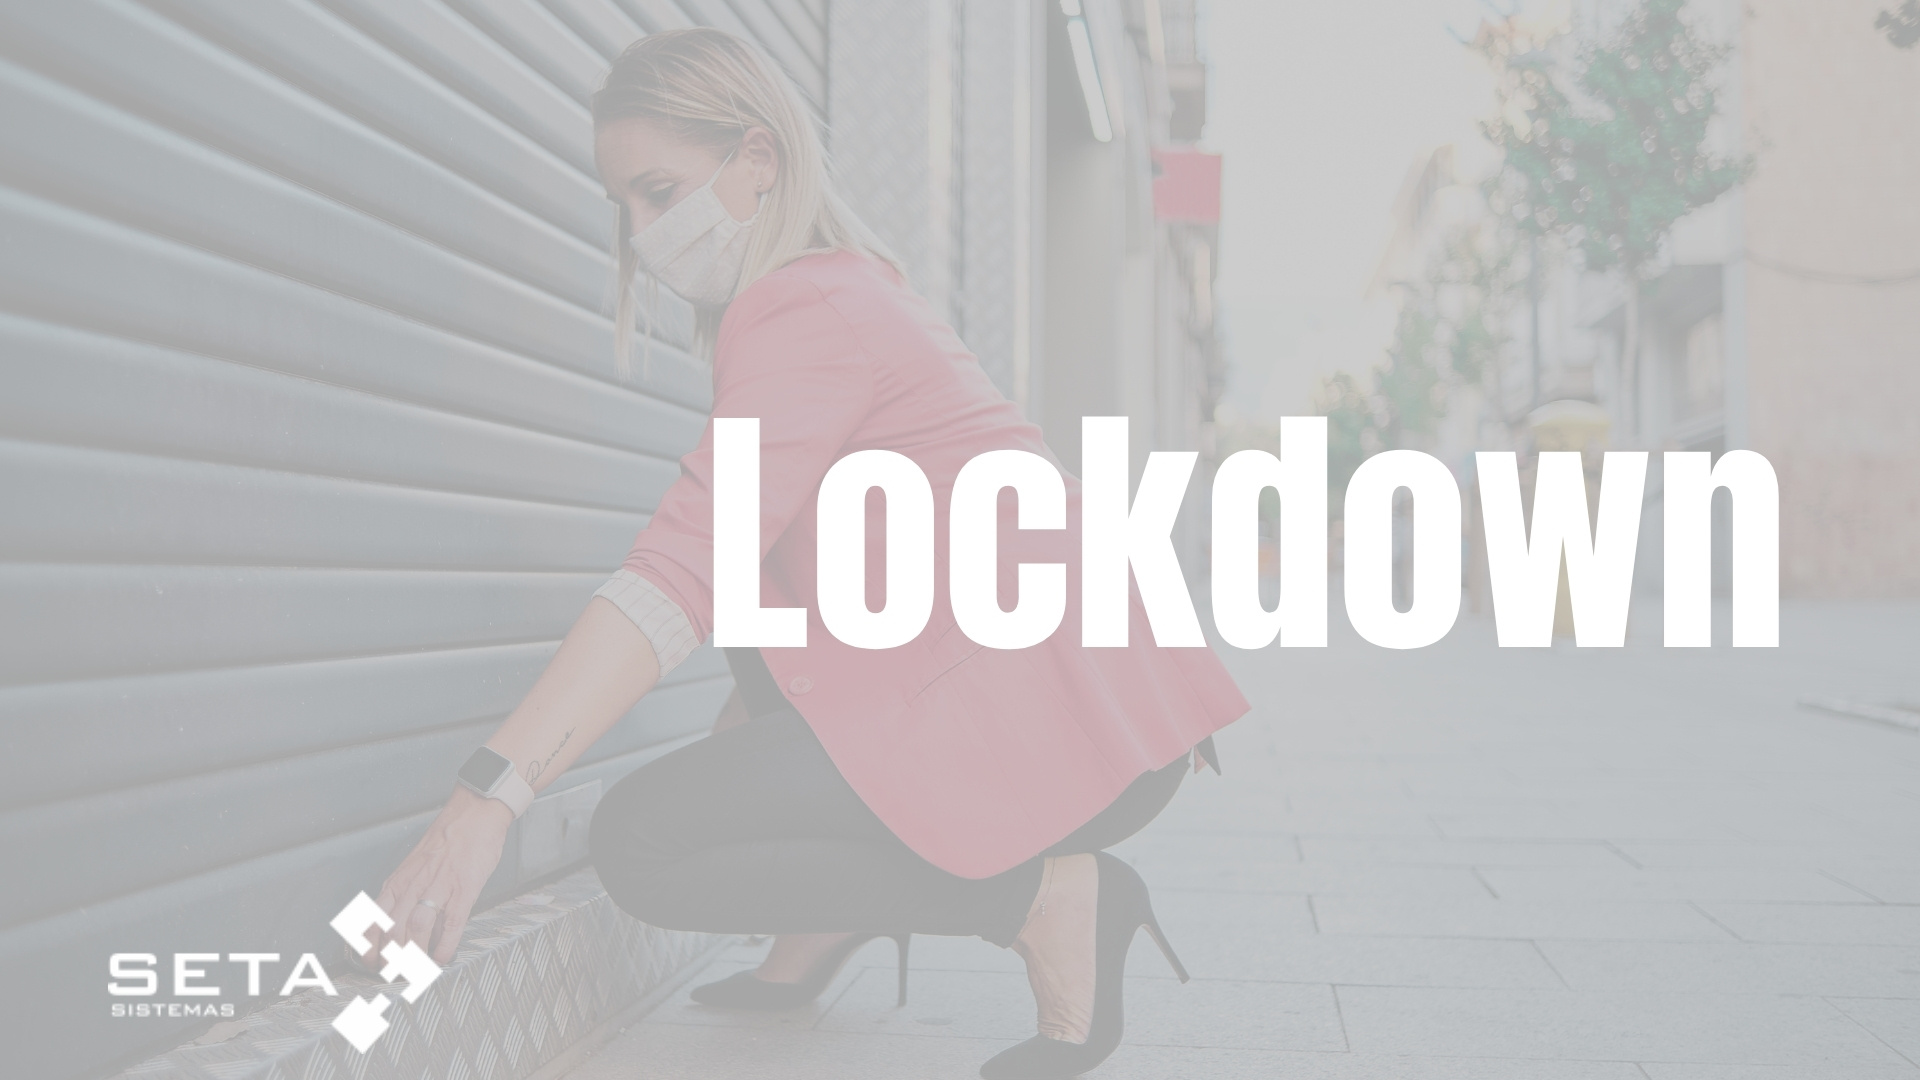 Decreto de lockdown – Goiânia e Aparecida de Goiânia